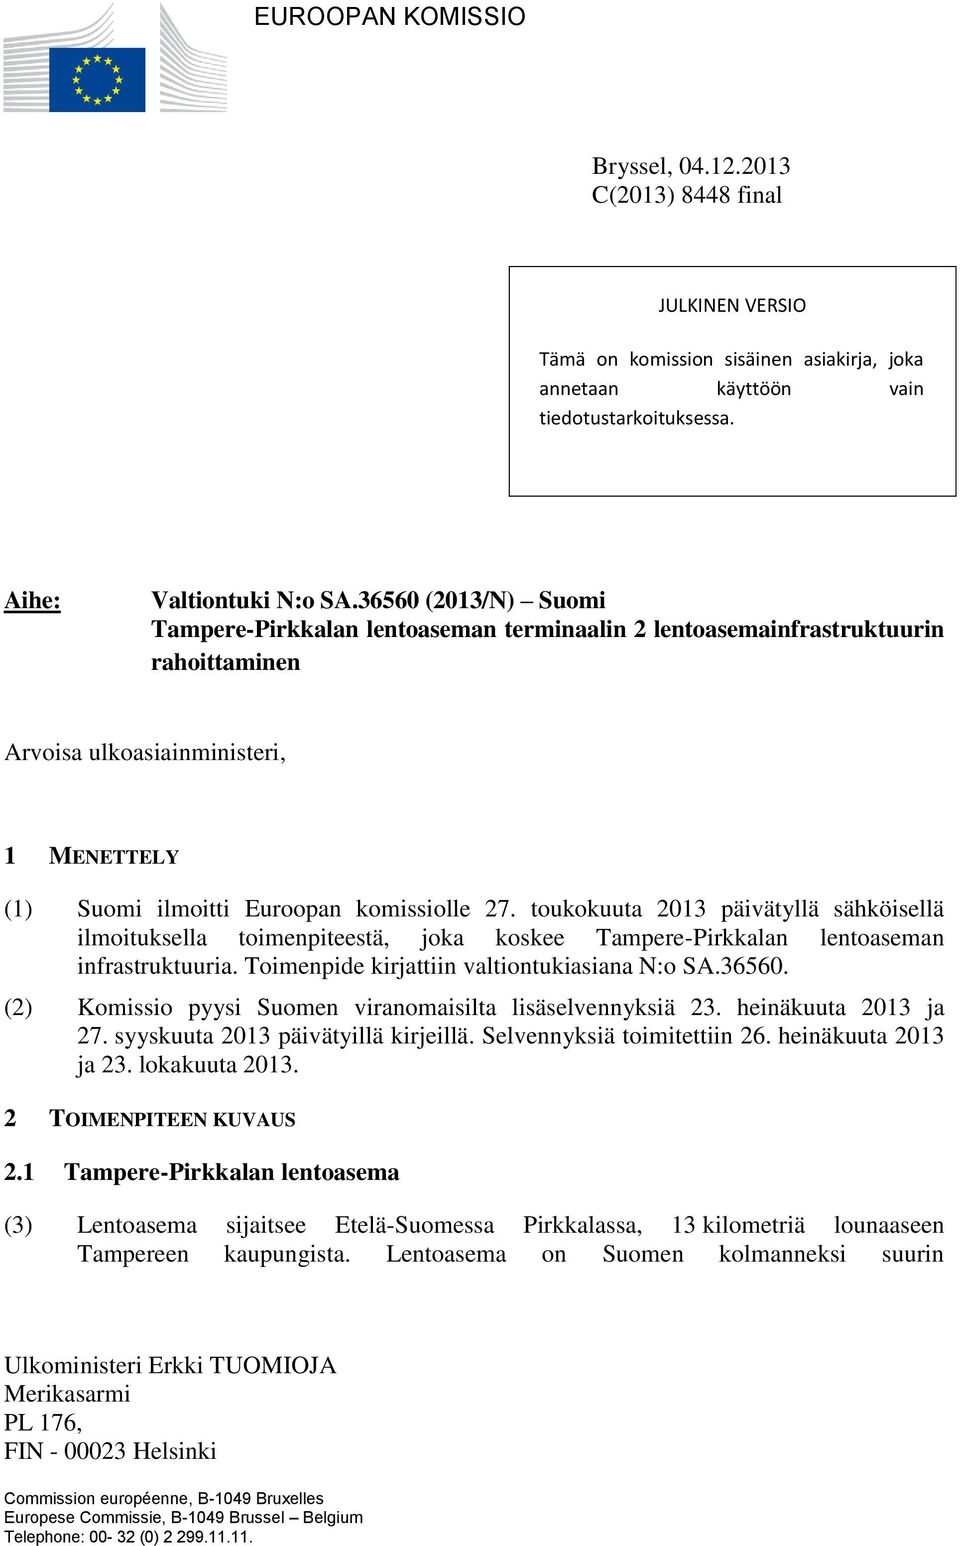 toukokuuta 2013 päivätyllä sähköisellä ilmoituksella toimenpiteestä, joka koskee Tampere-Pirkkalan lentoaseman infrastruktuuria. Toimenpide kirjattiin valtiontukiasiana N:o SA.36560.